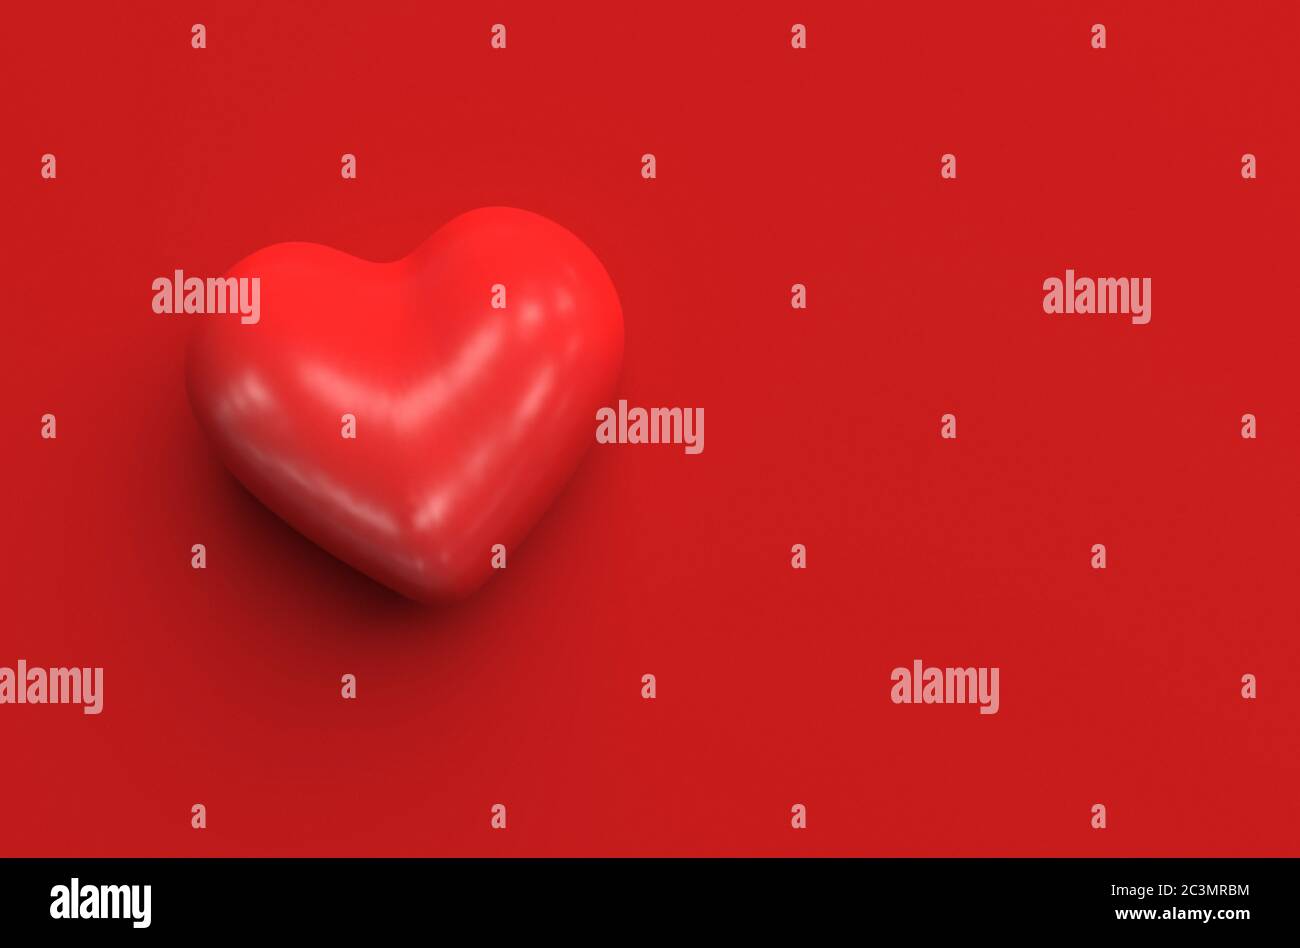 Einzelne rote Herzform auf rotem Hintergrund. Draufsicht. Monochrome Illustration mit Kopierbereich. 3D-Rendering Stockfoto